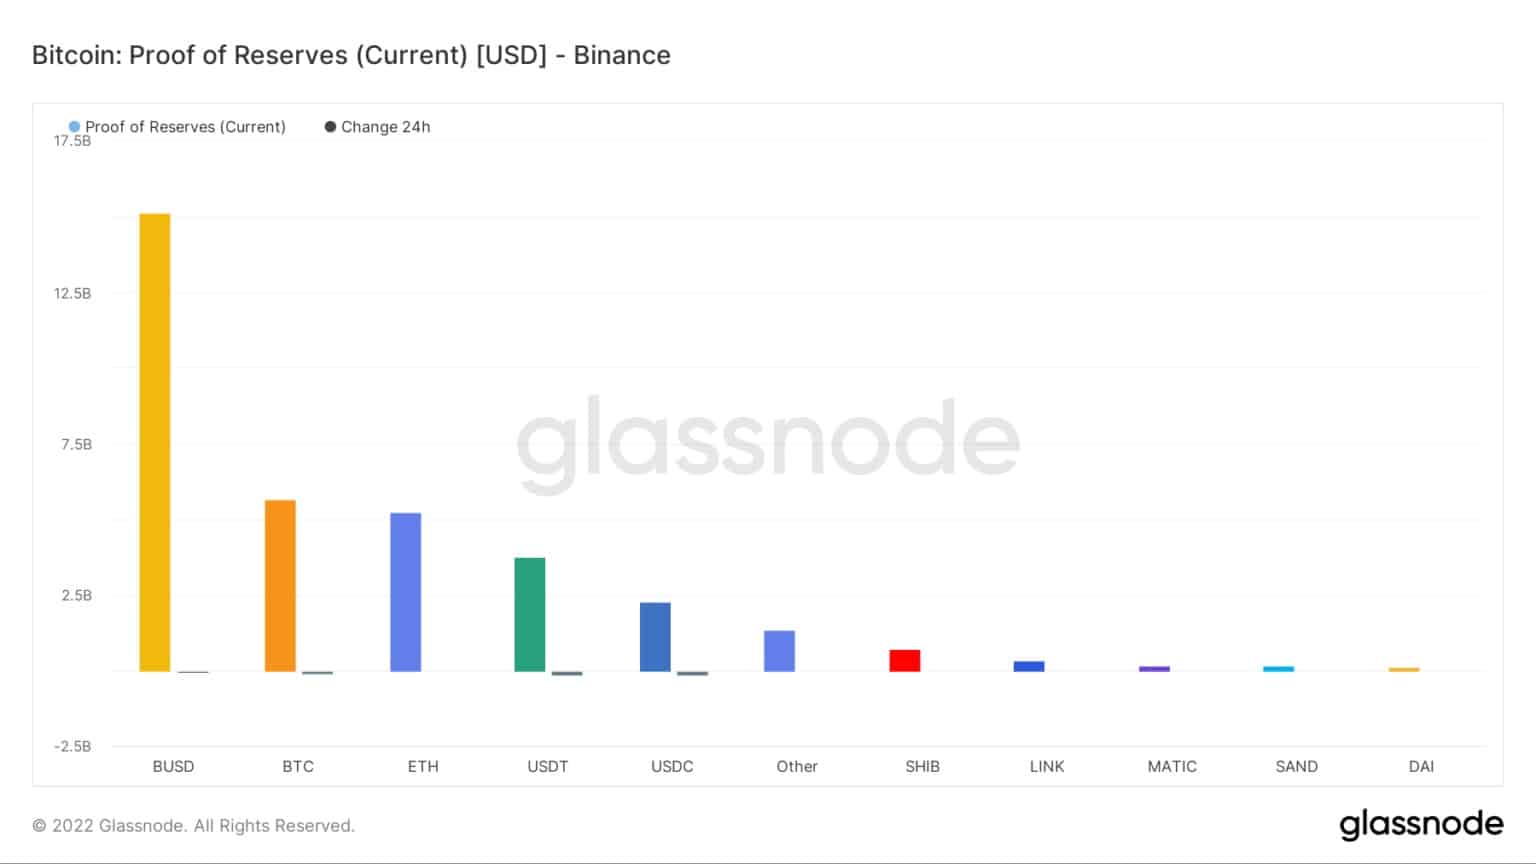 Comprovante de reservas - Caixa / Fonte: Glassnode